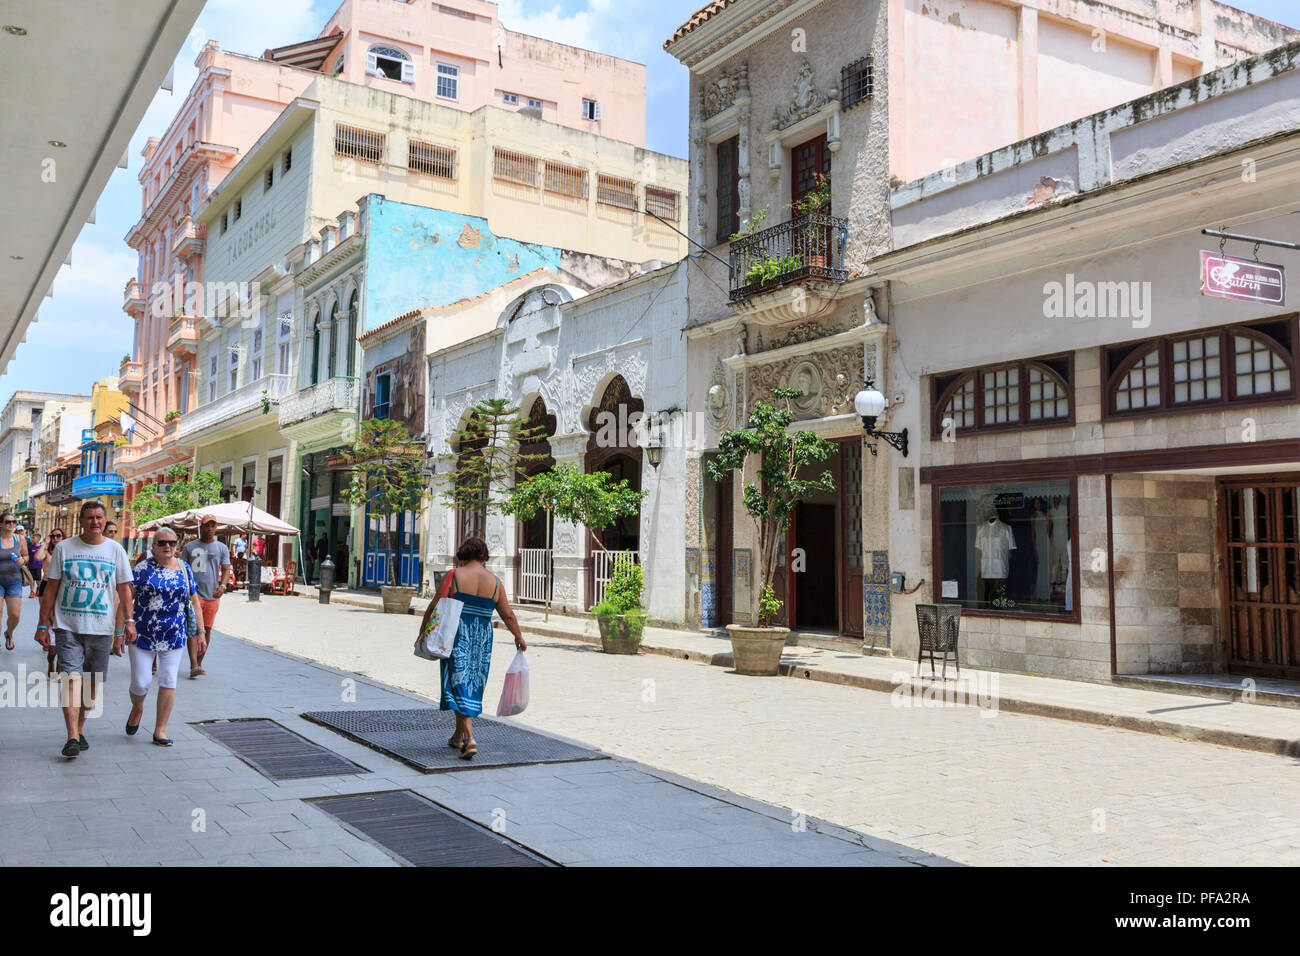 Street Scene mit Menschen, Touristen und Kubaner Bummeln in der beliebten Einkaufsstraße Calle Obispo, Habana Vieja, Kuba Stockfoto